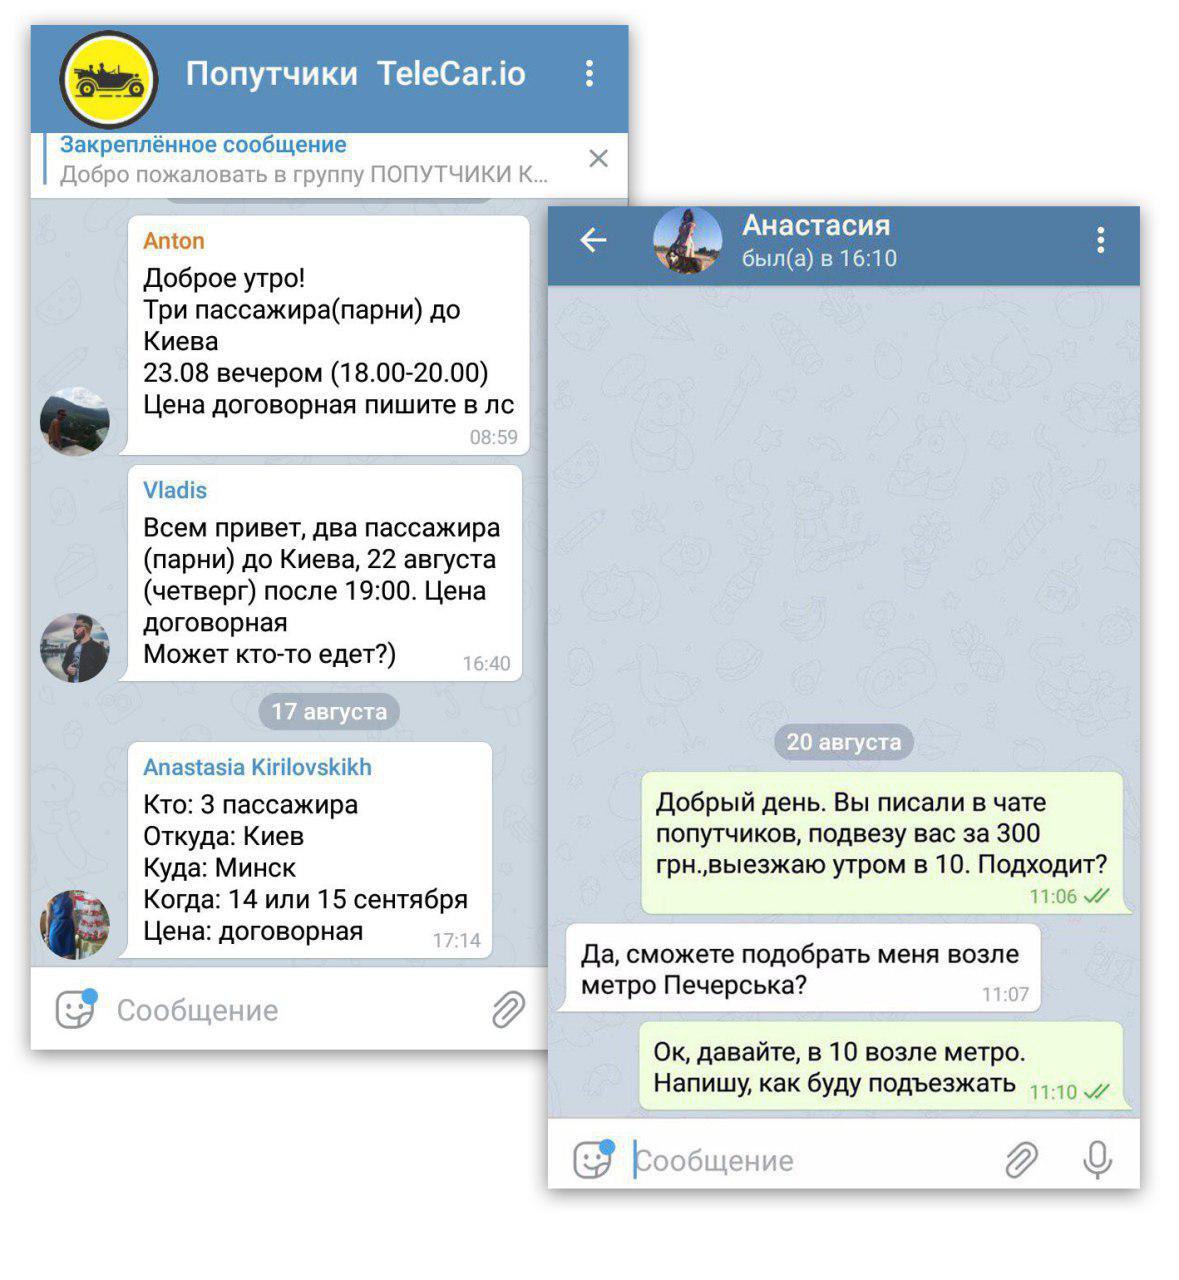 Ukraine Telegram Channel Link